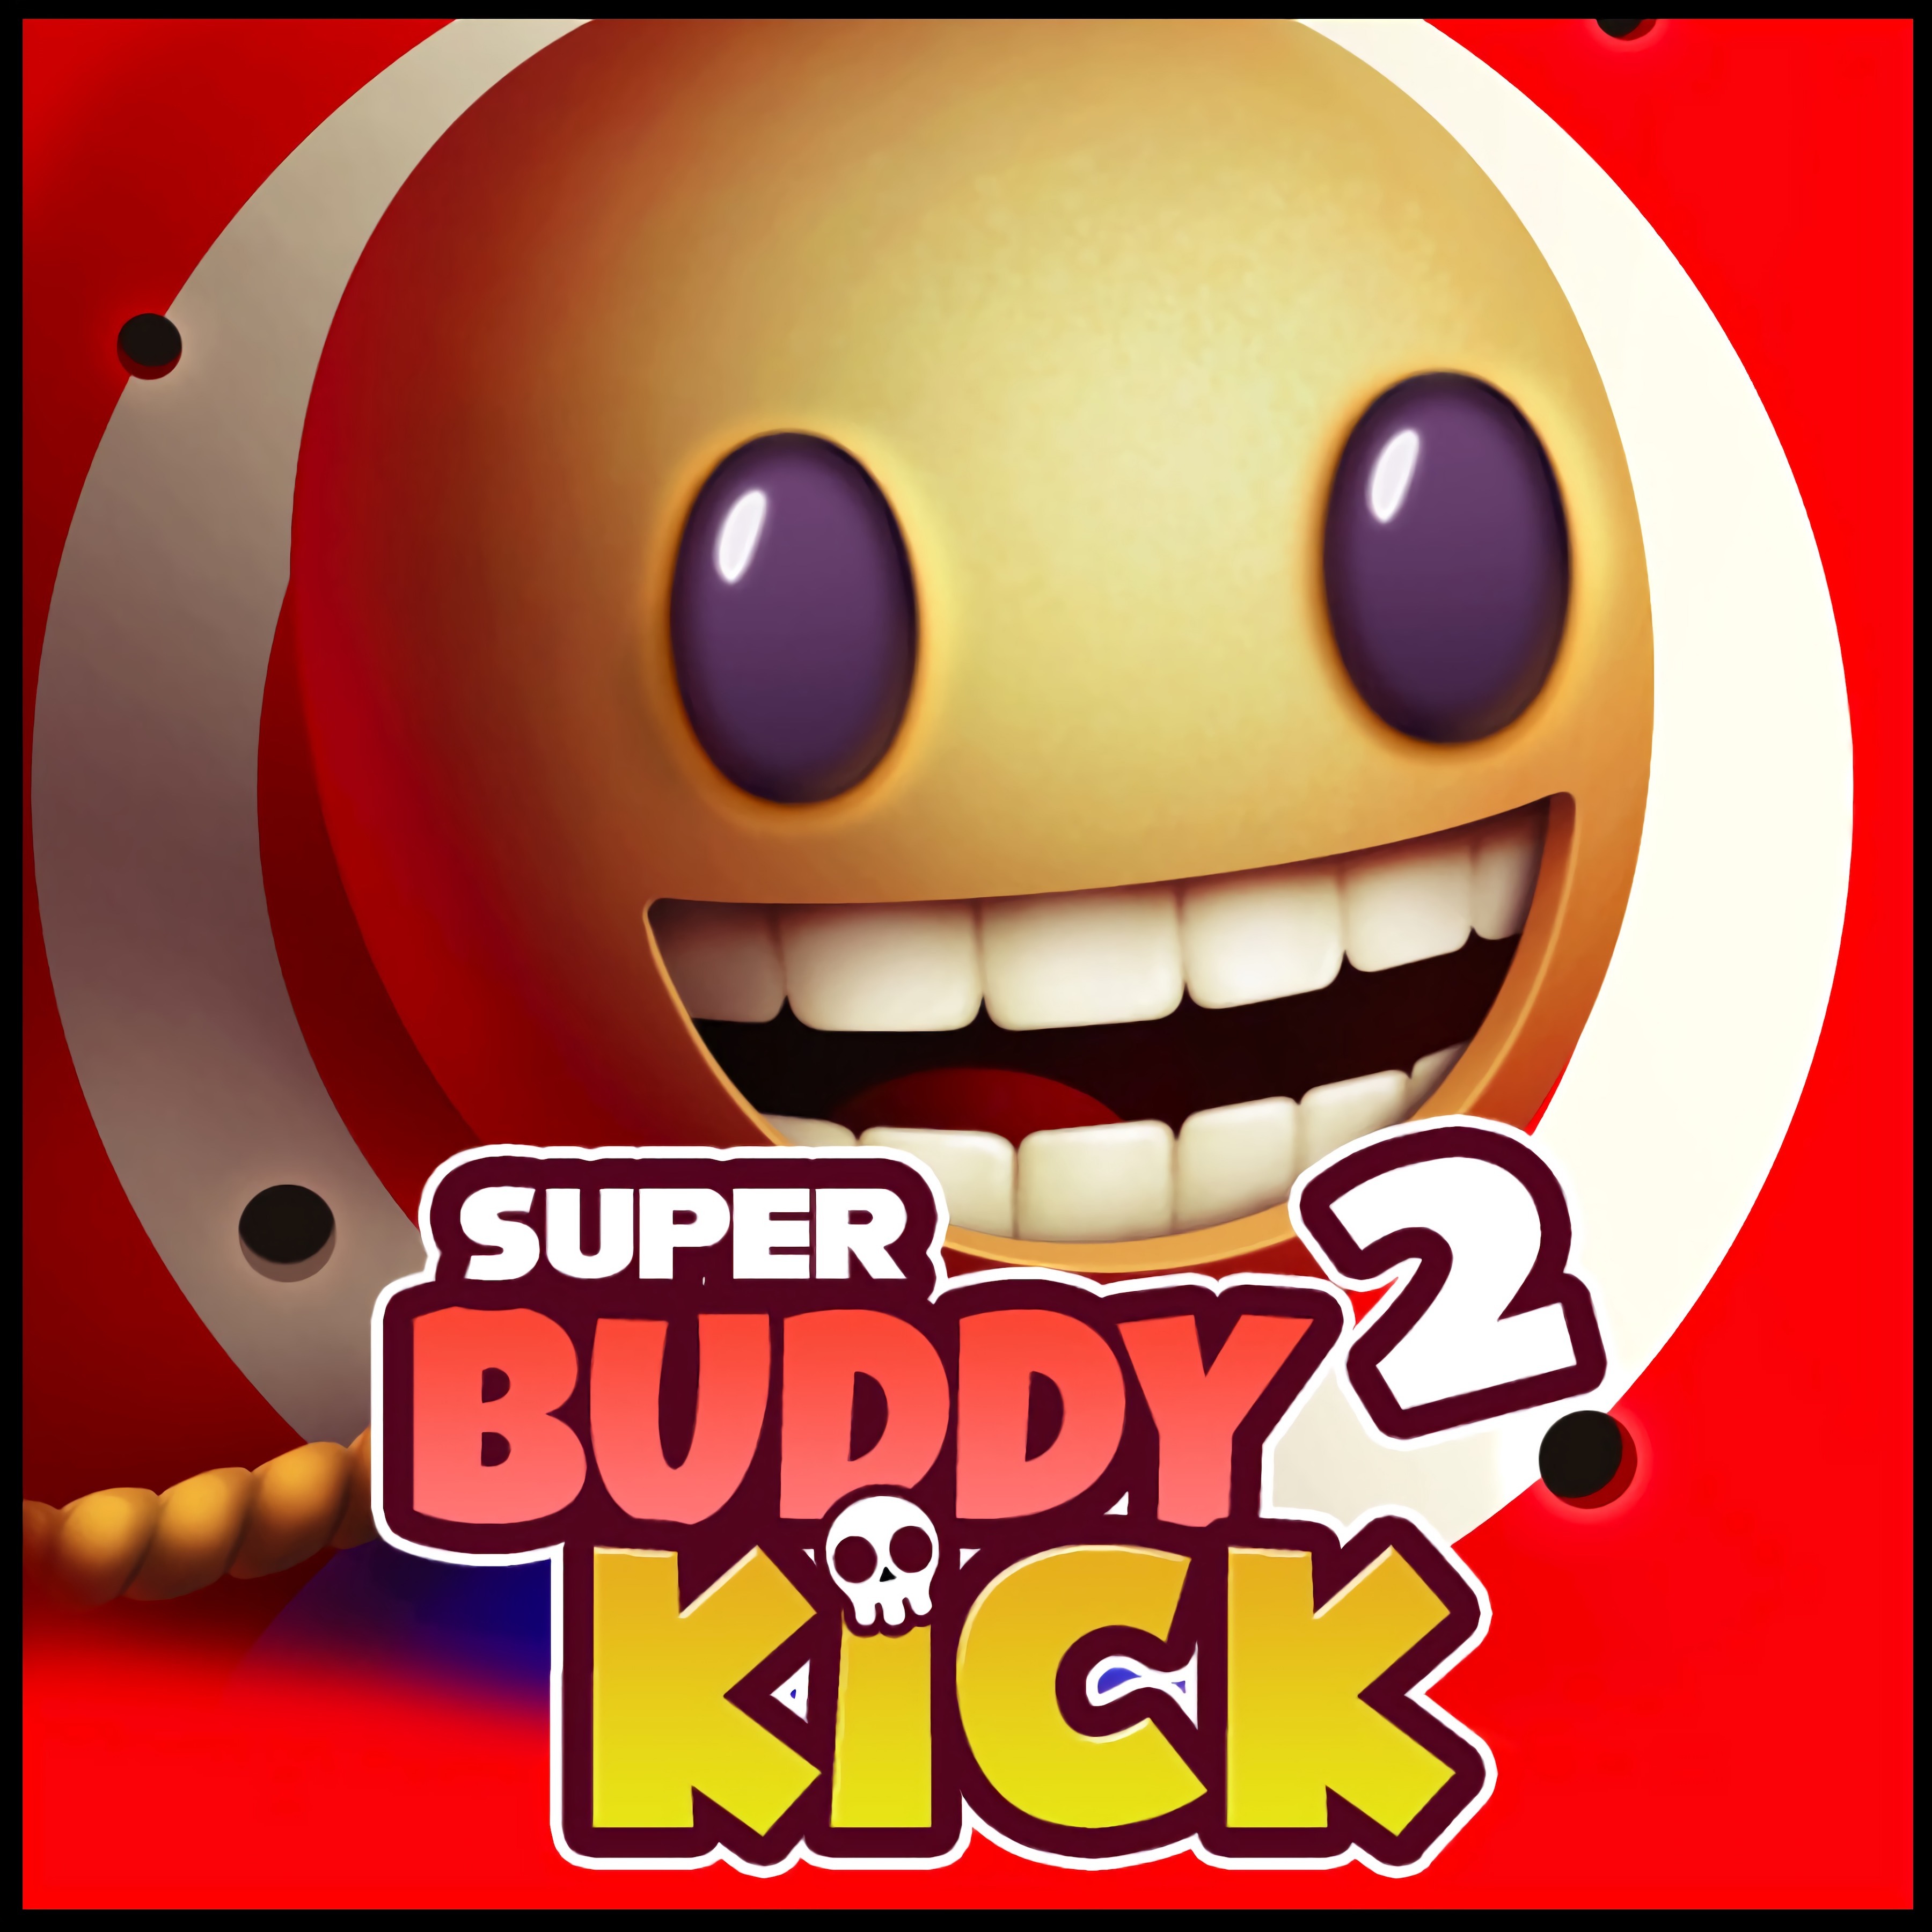 kick the buddy game play